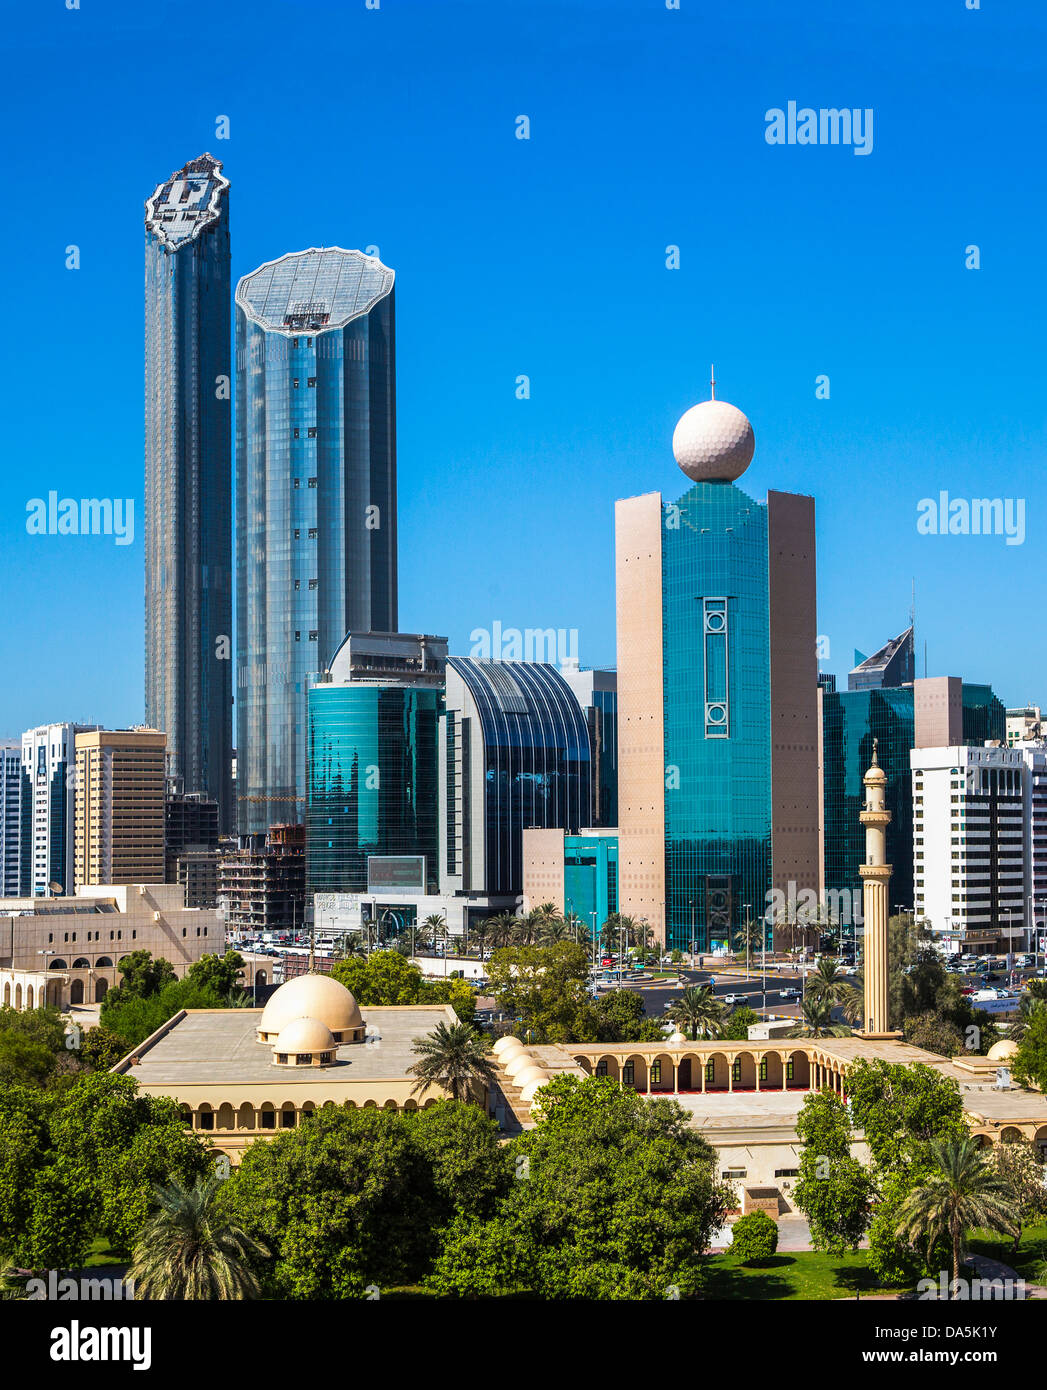 Vereinigte Arabische Emirate, Vereinigte Arabische Emirate, Naher Osten, Abu Dhabi, Stadt, Skyline, Etisalat Tower, Etisalat, Turm, Al Dhafrah, Bezirk, archite Stockfoto